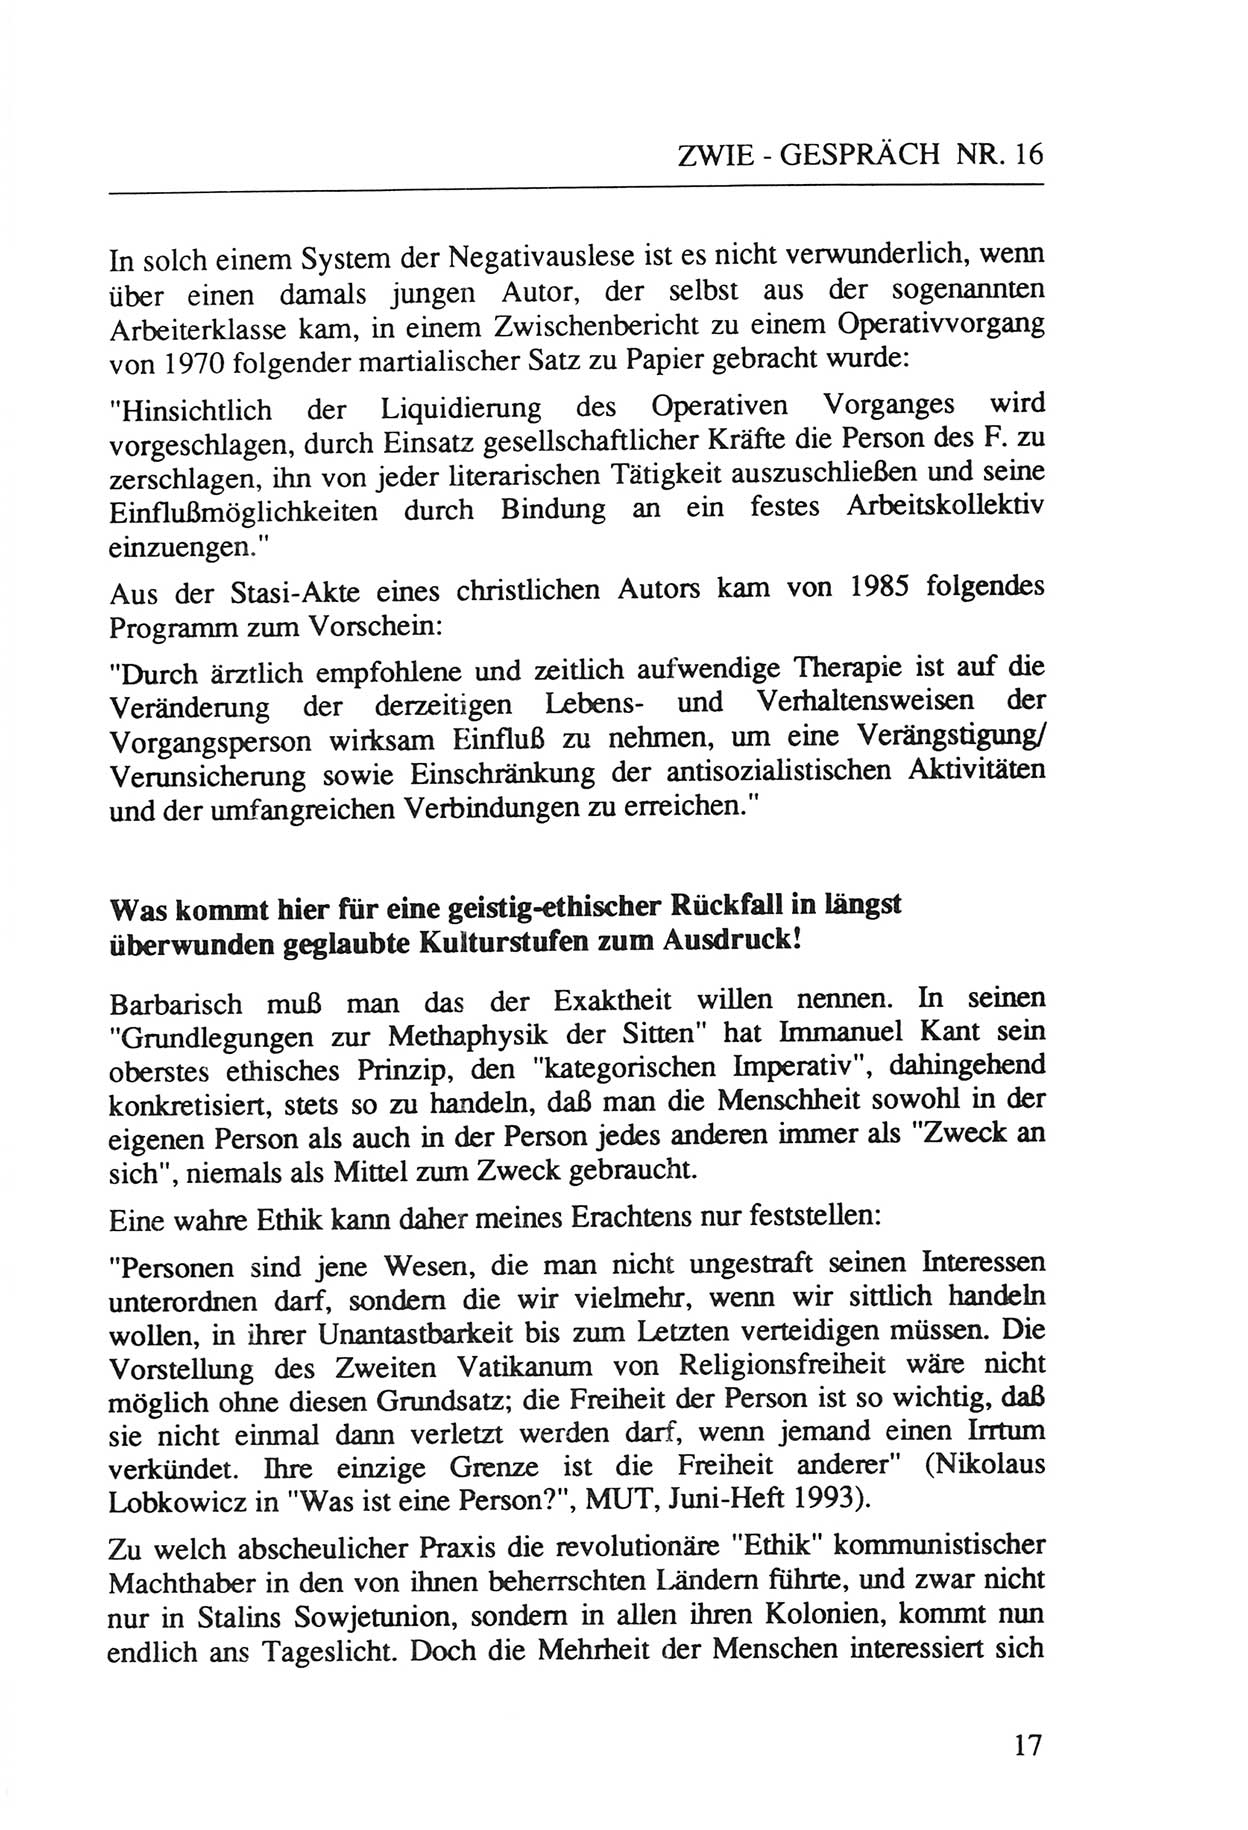 Zwie-Gespräch, Beiträge zur Aufarbeitung der Staatssicherheits-Vergangenheit [Deutsche Demokratische Republik (DDR)], Ausgabe Nr. 16, Berlin 1993, Seite 17 (Zwie-Gespr. Ausg. 16 1993, S. 17)